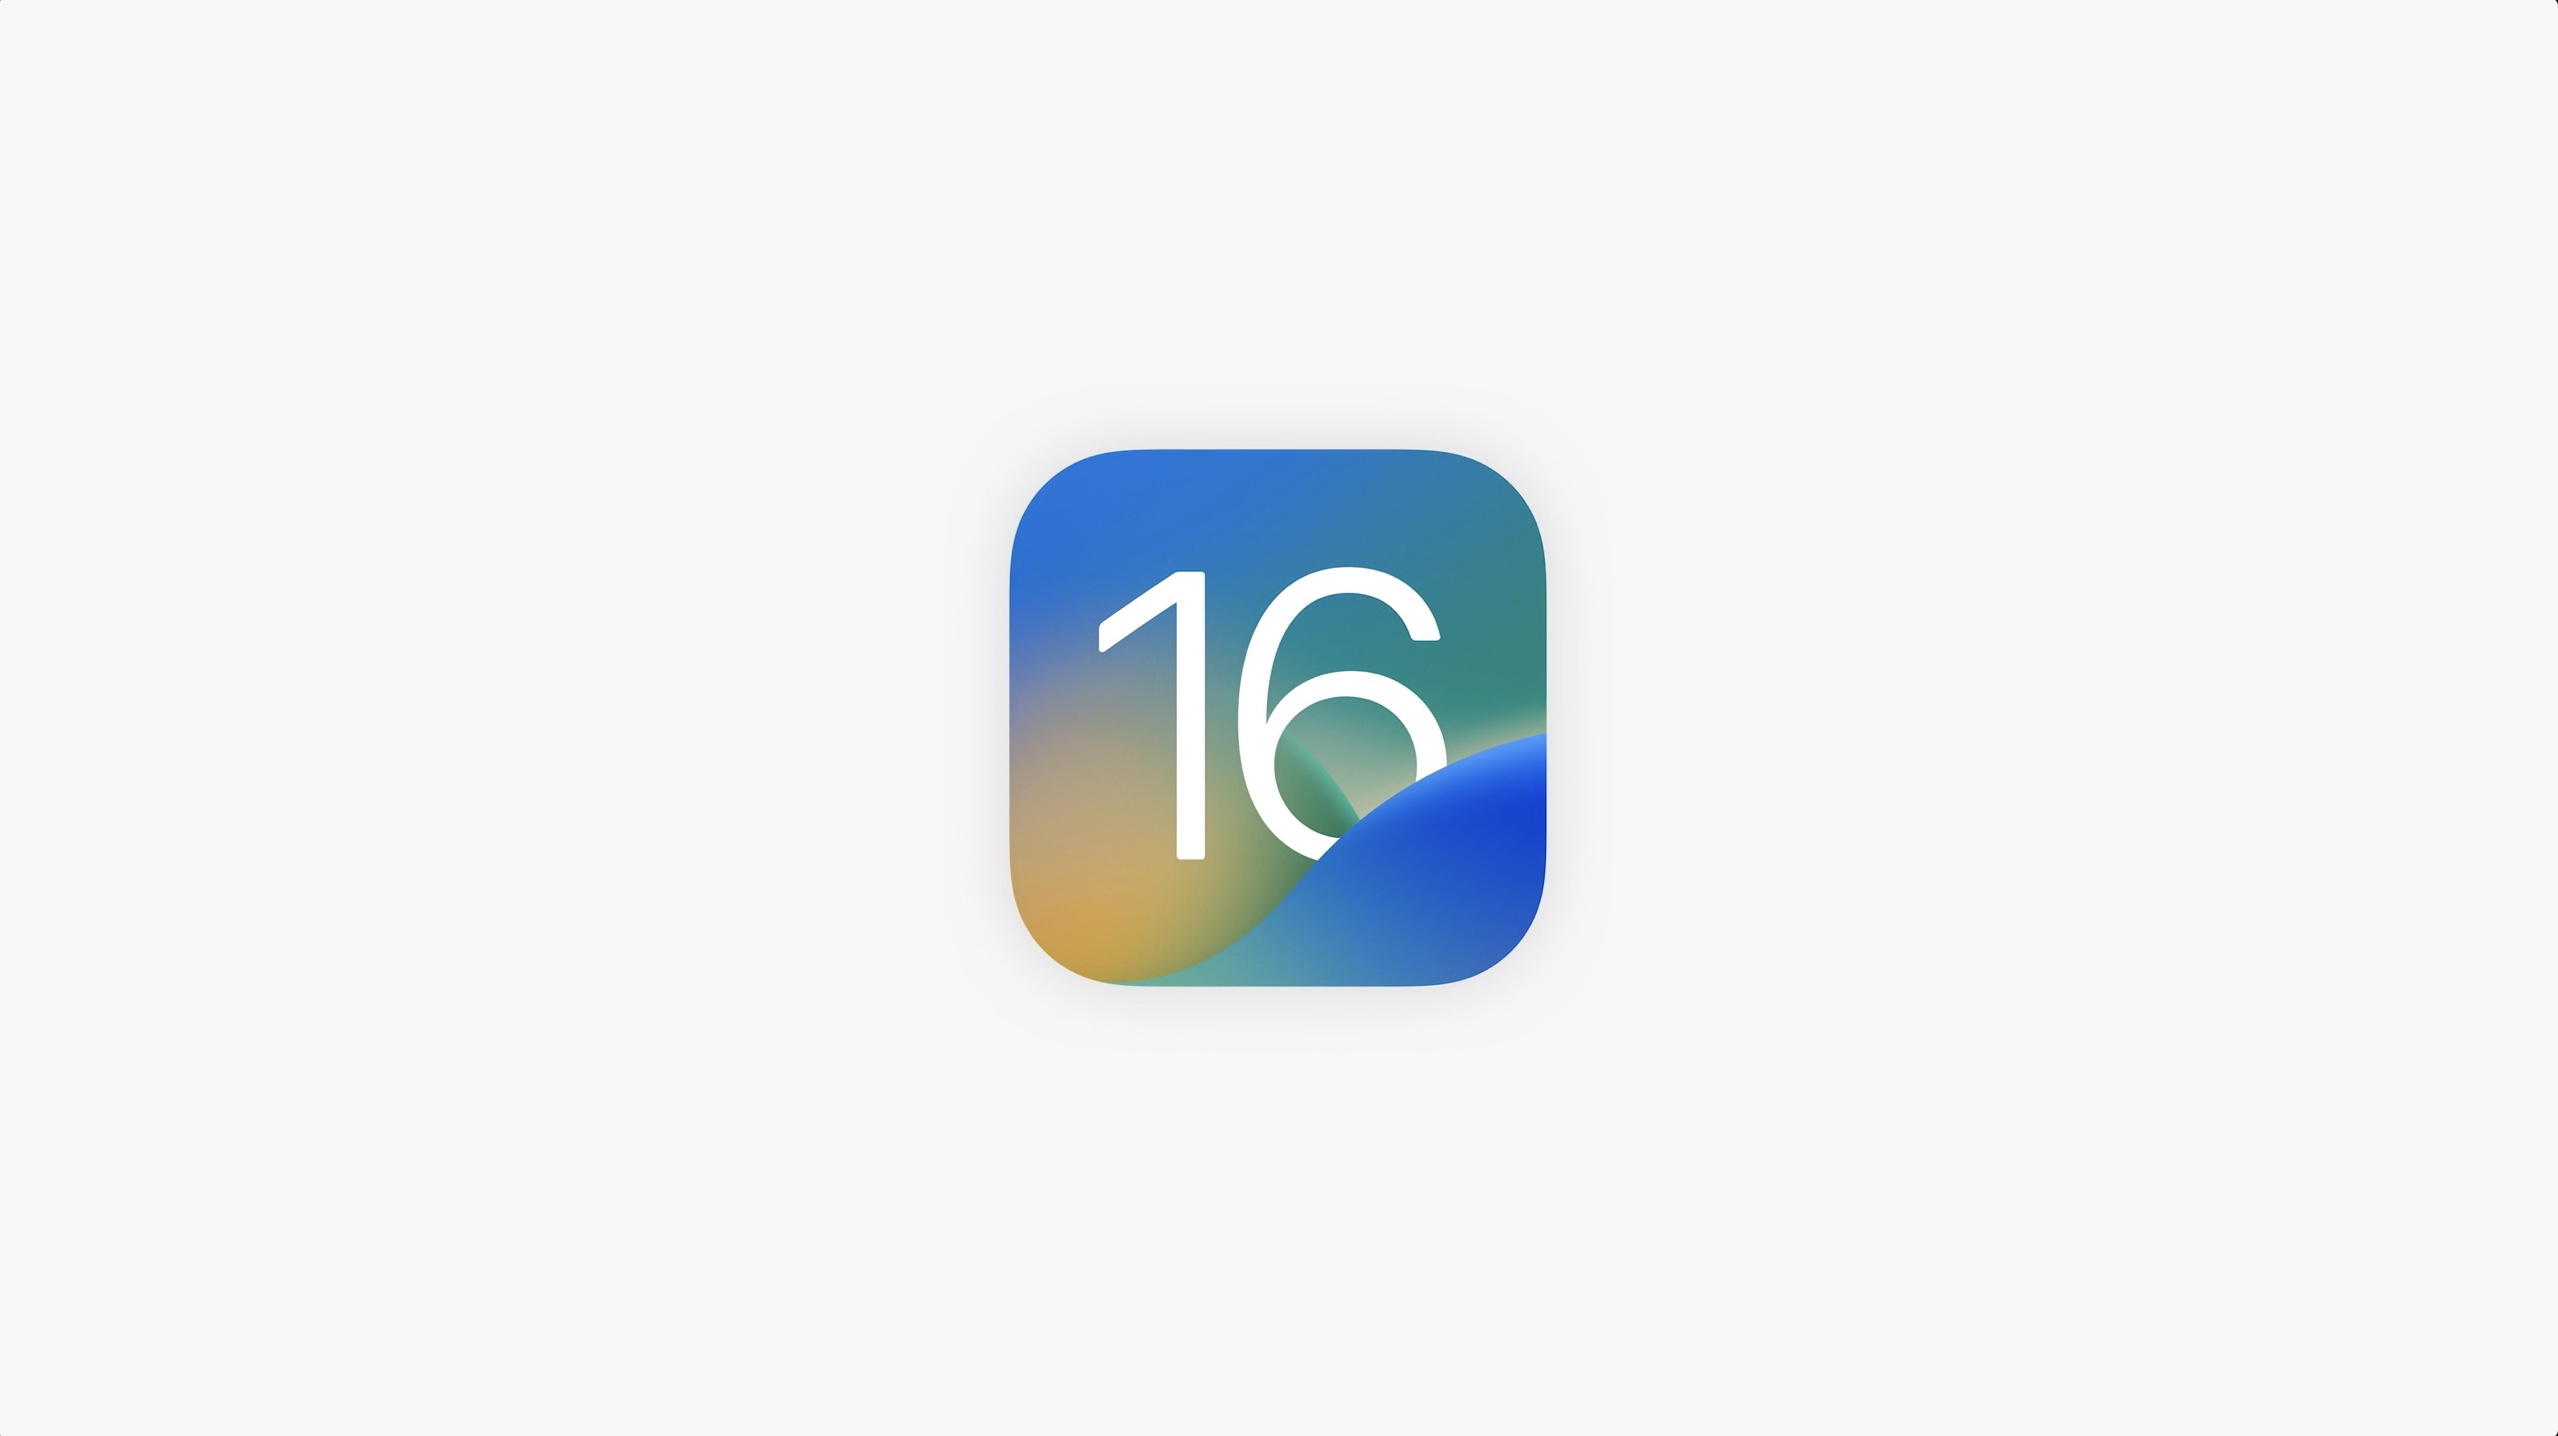 تم تعيين رمز iOS 16 على خلفية صلبة ذات لون رمادي فاتح